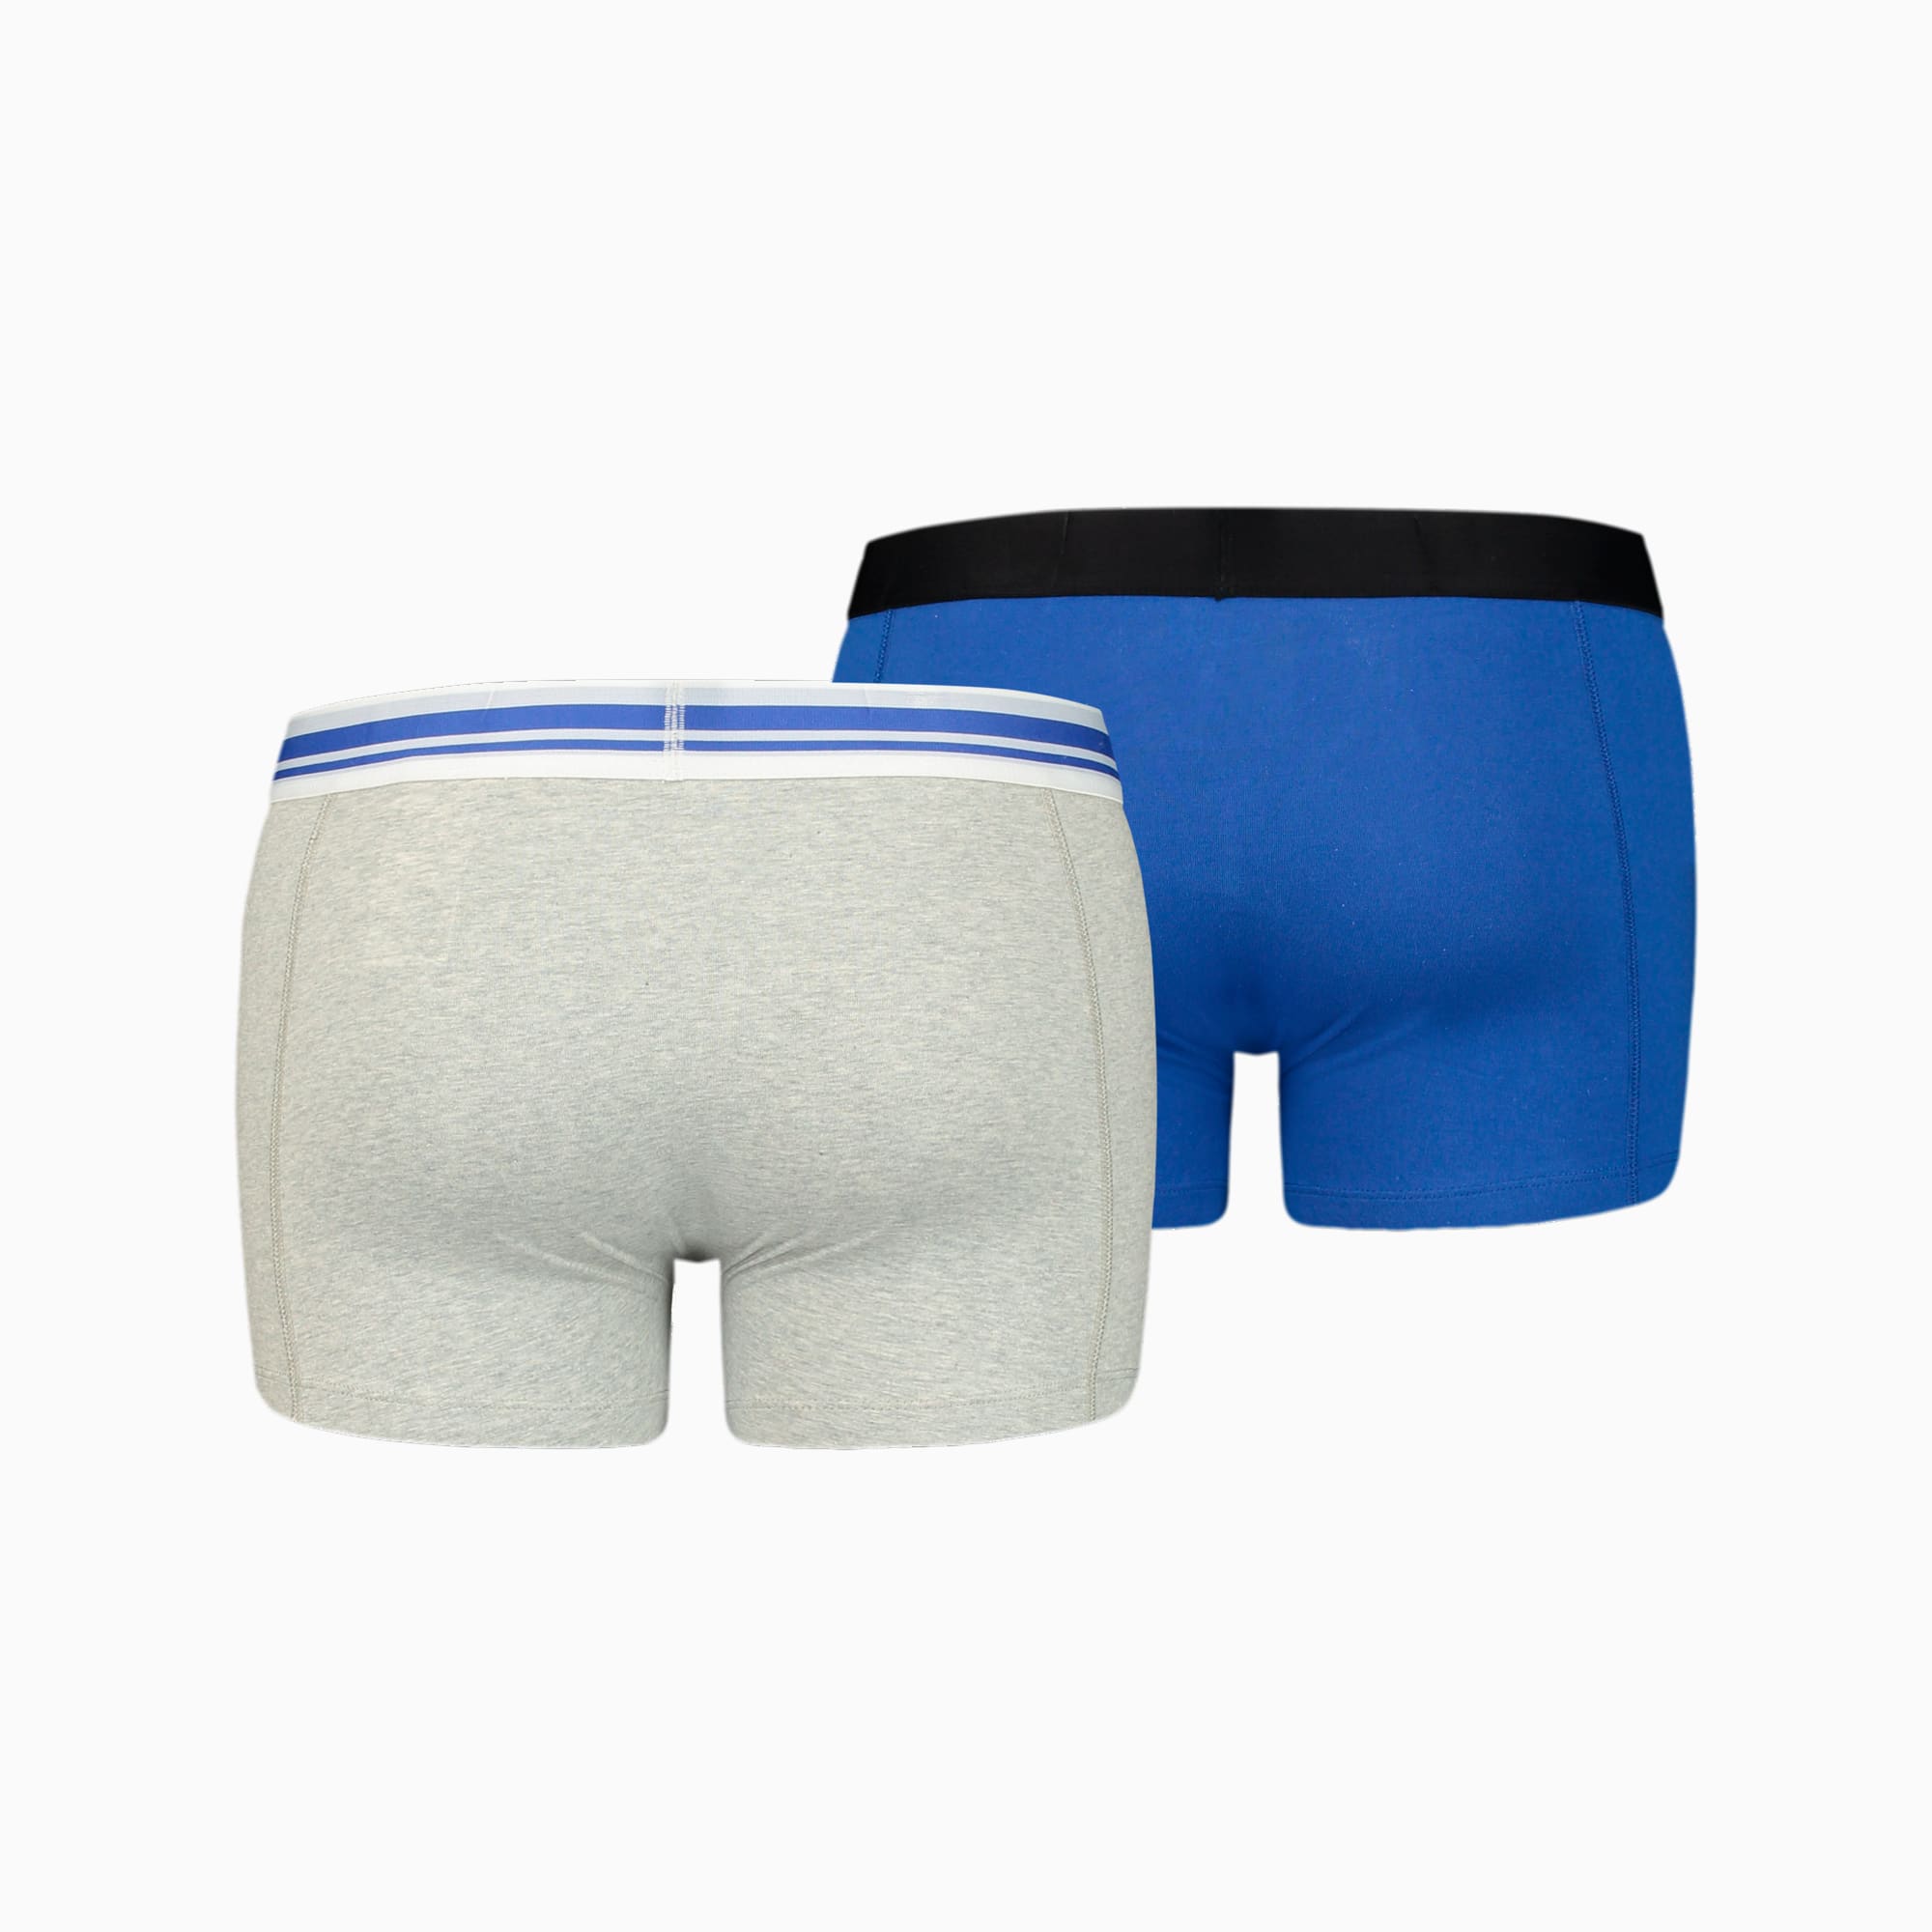 PUMA Placed Logo Herren-Boxershorts 2er-Pack, Mit Grau Melange, Grau/Blau, Größe: M, Kleidung